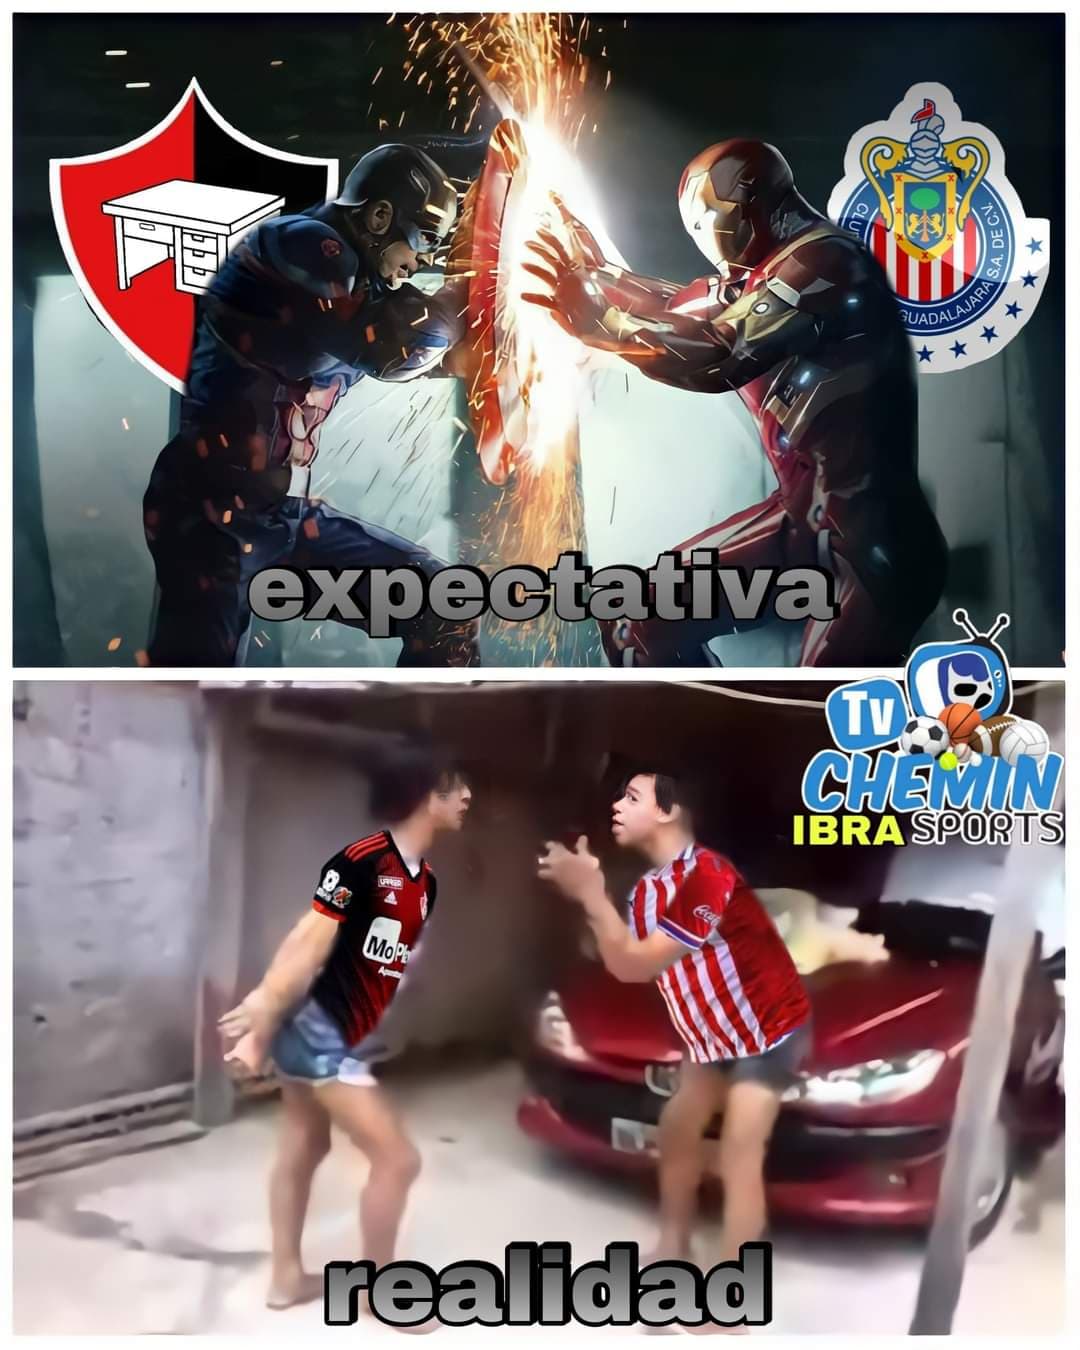 Memes de la Jornada 16 de Liga MX